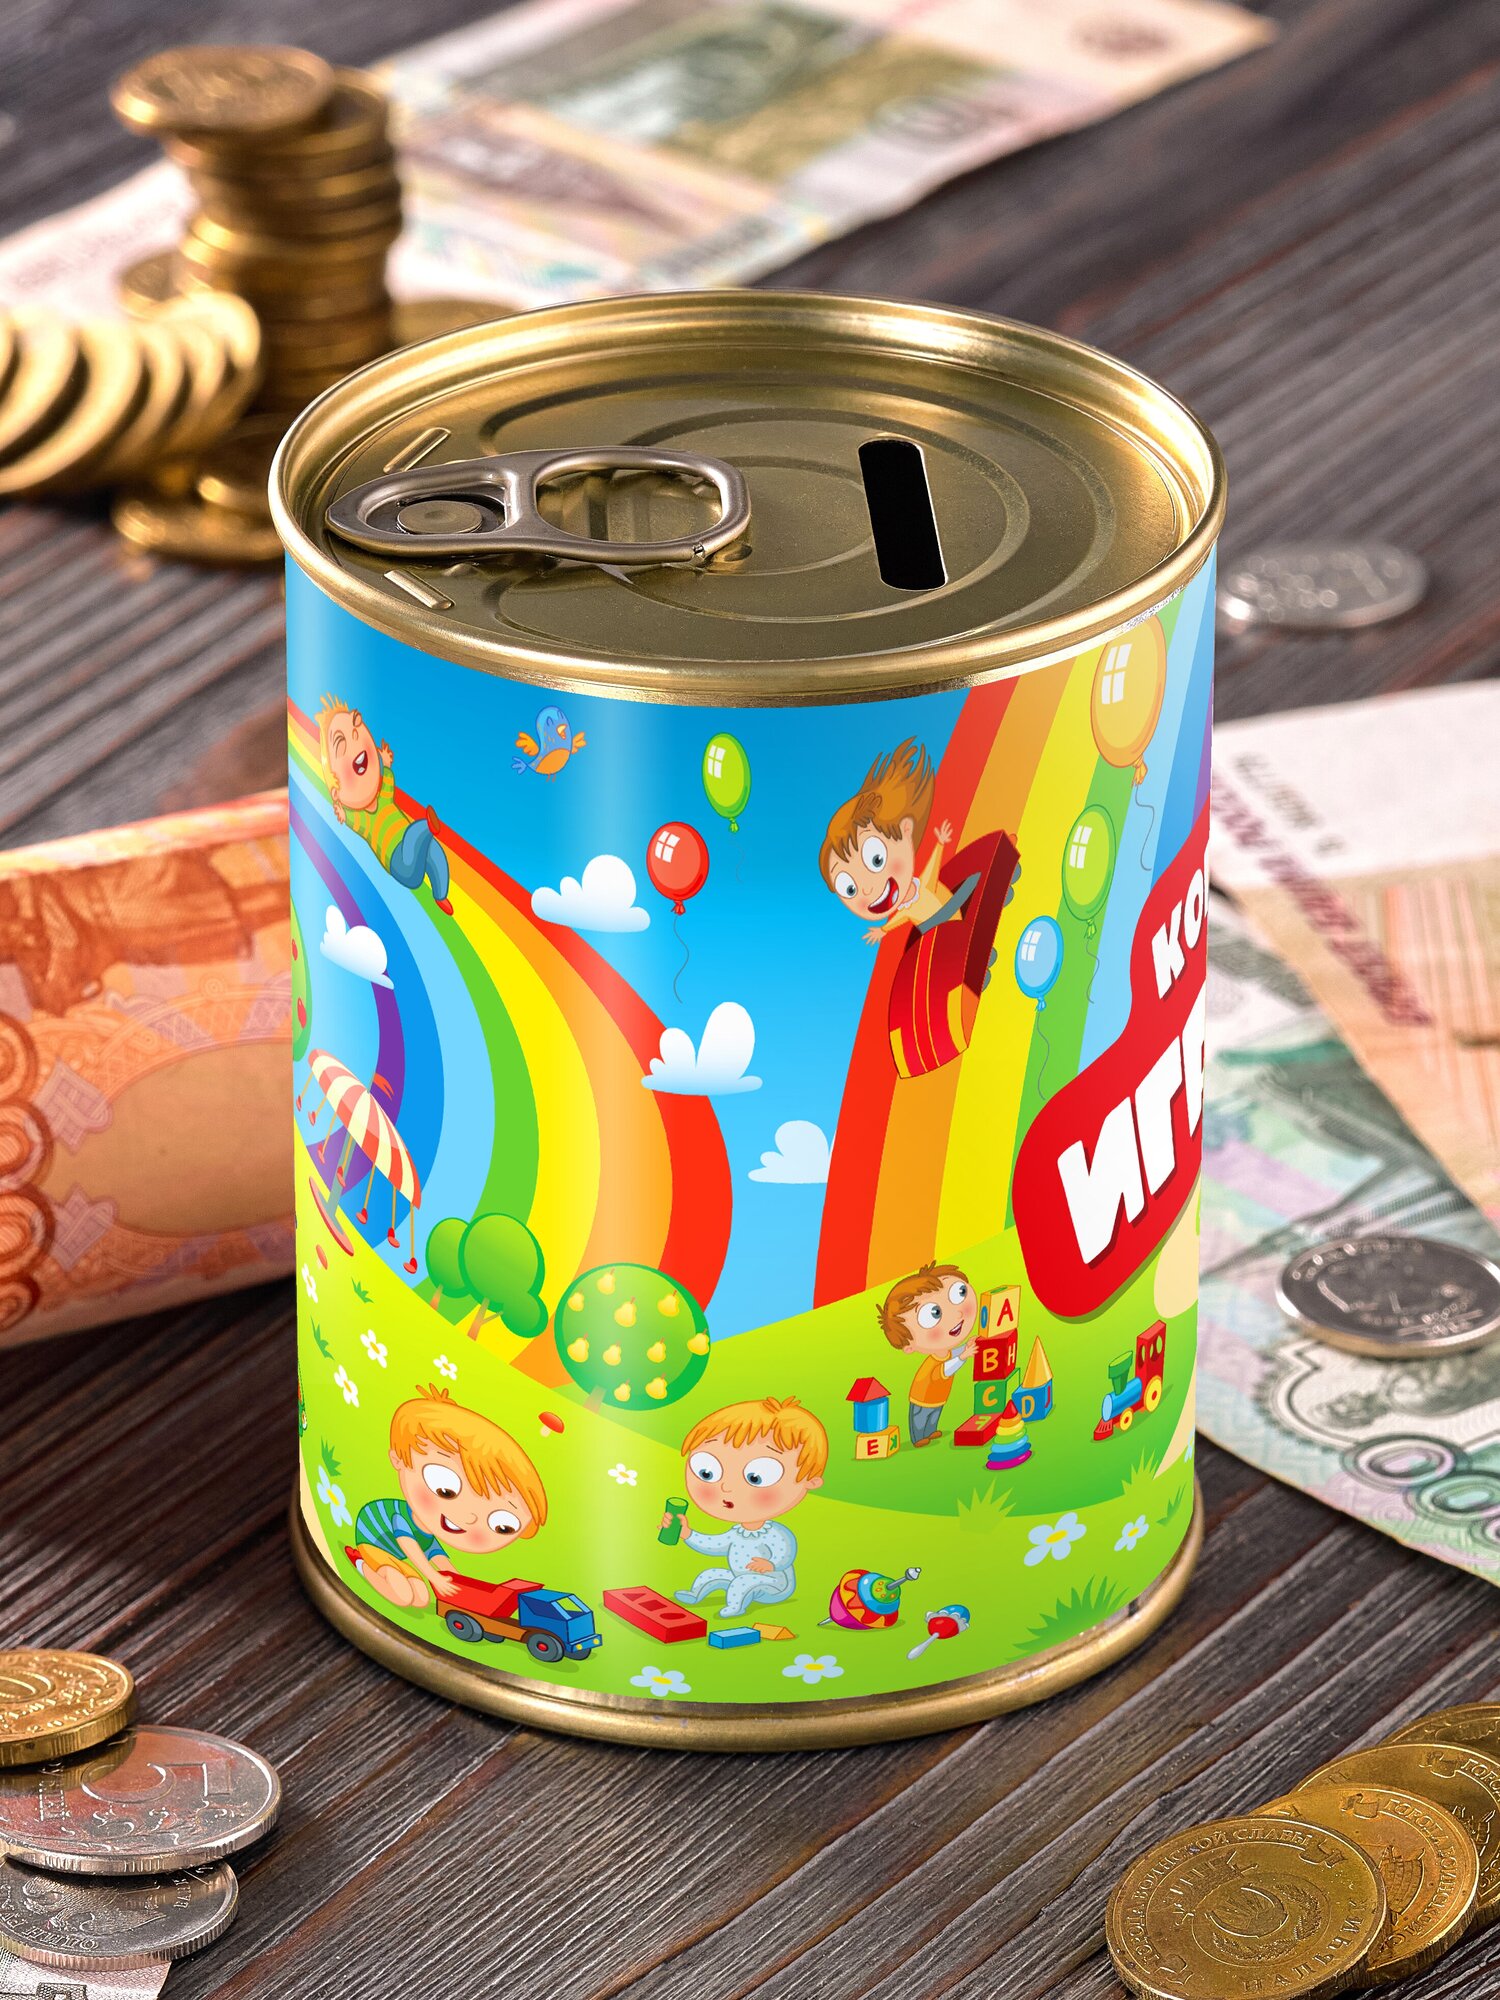 Копилка "Коплю на игрушки - радуга" для денег подарок сейф ребенку мальчику девочке детская выпускной